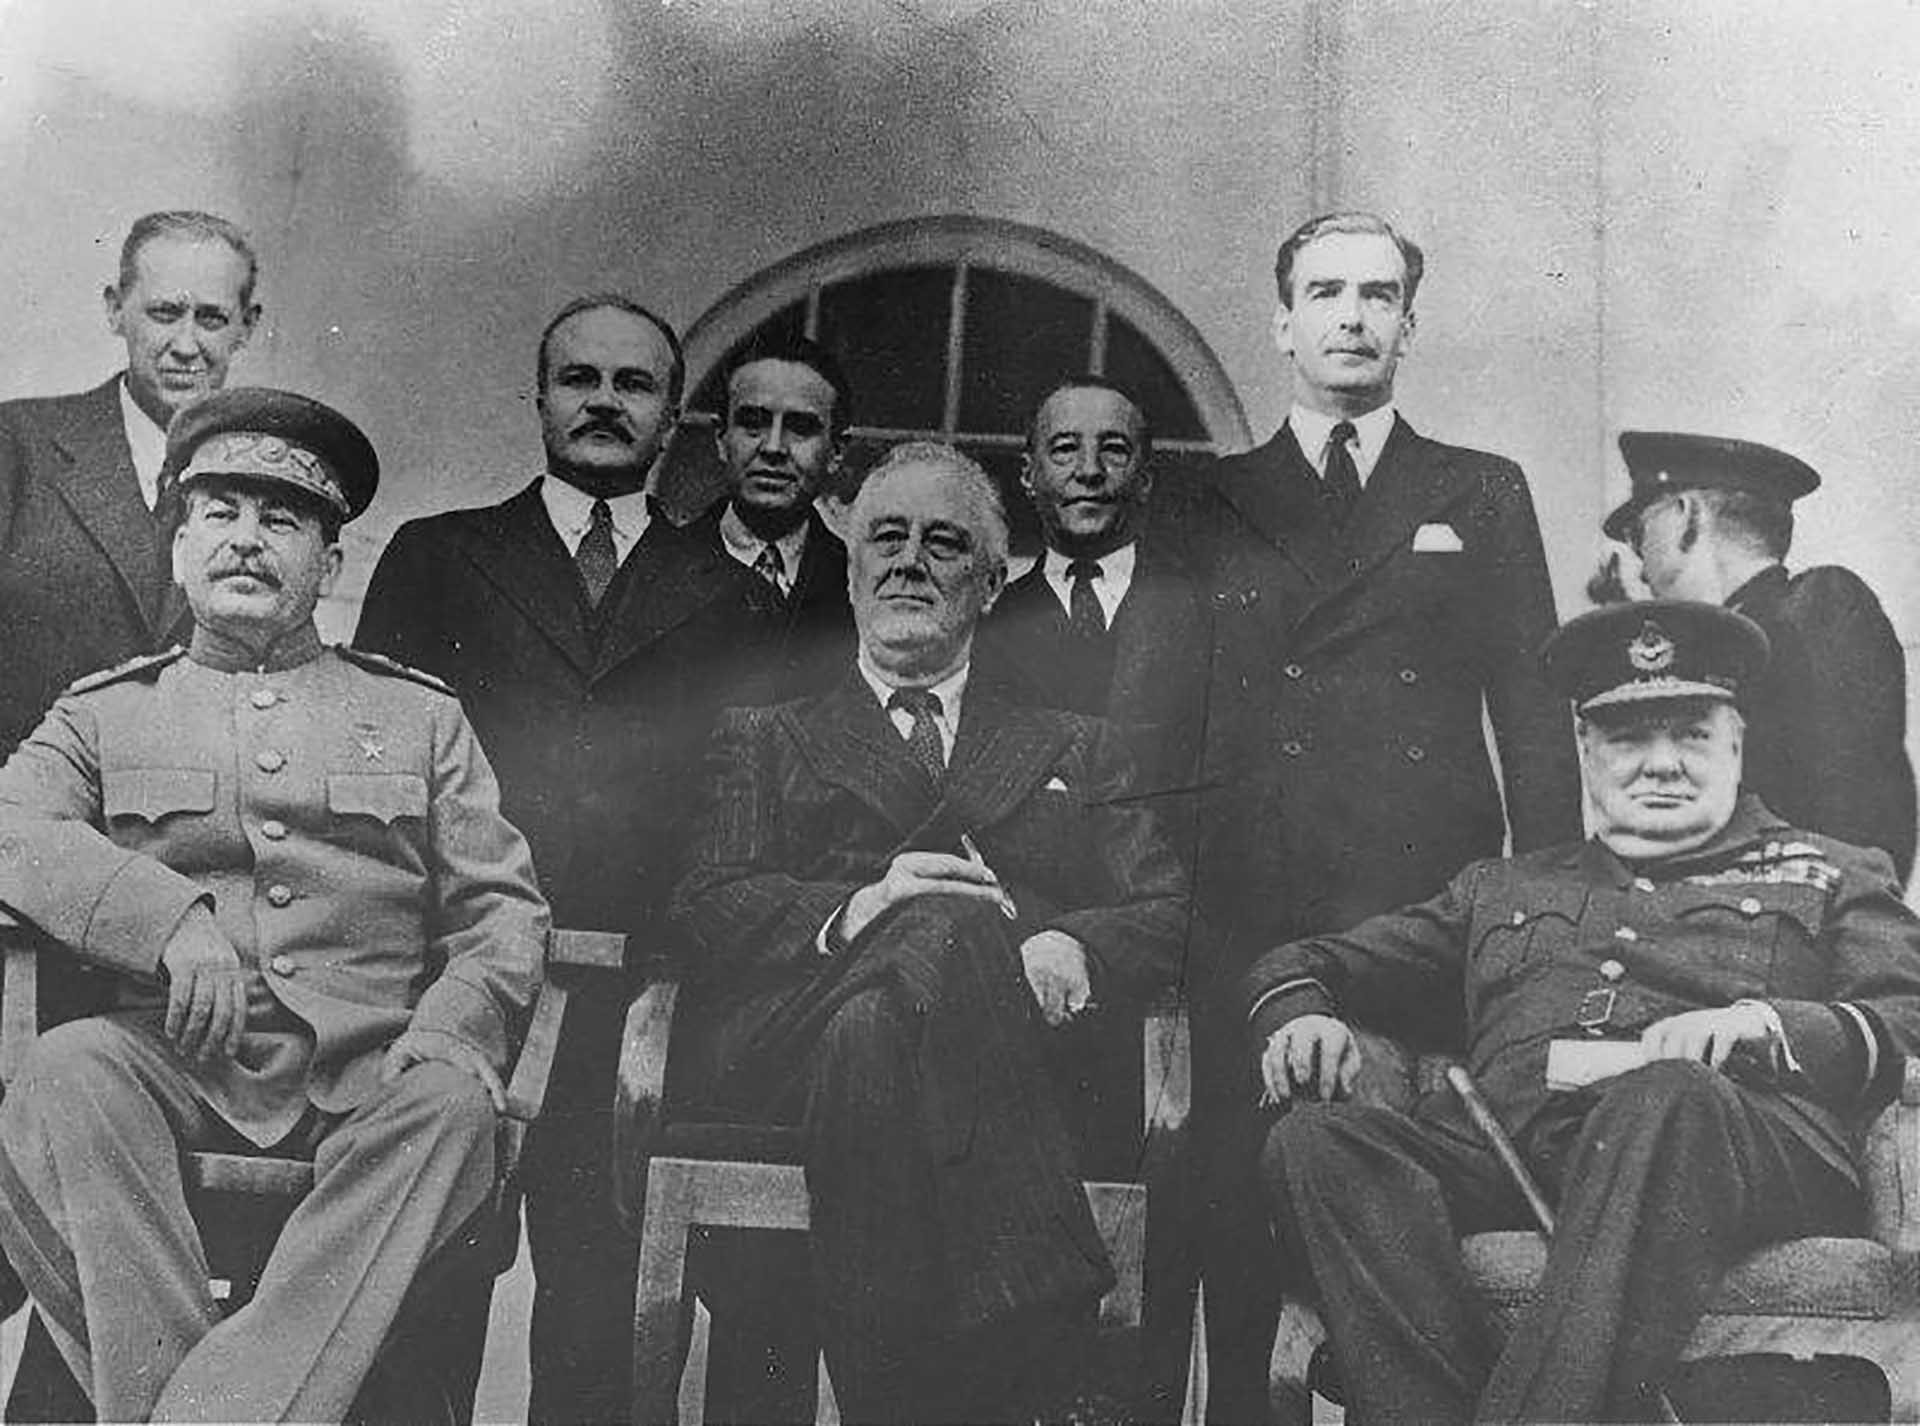 Nguyên soái Liên Xô, Chủ tịch Ủy ban Quốc phòng Nhà nước Liên Xô Joseph Stalin, Tổng thống Mỹ Franklin Roosevelt và Thủ tướng Anh Winston Churchill tại Hội nghị Tehran năm 1943. (Nguồn: Topwar.ru)